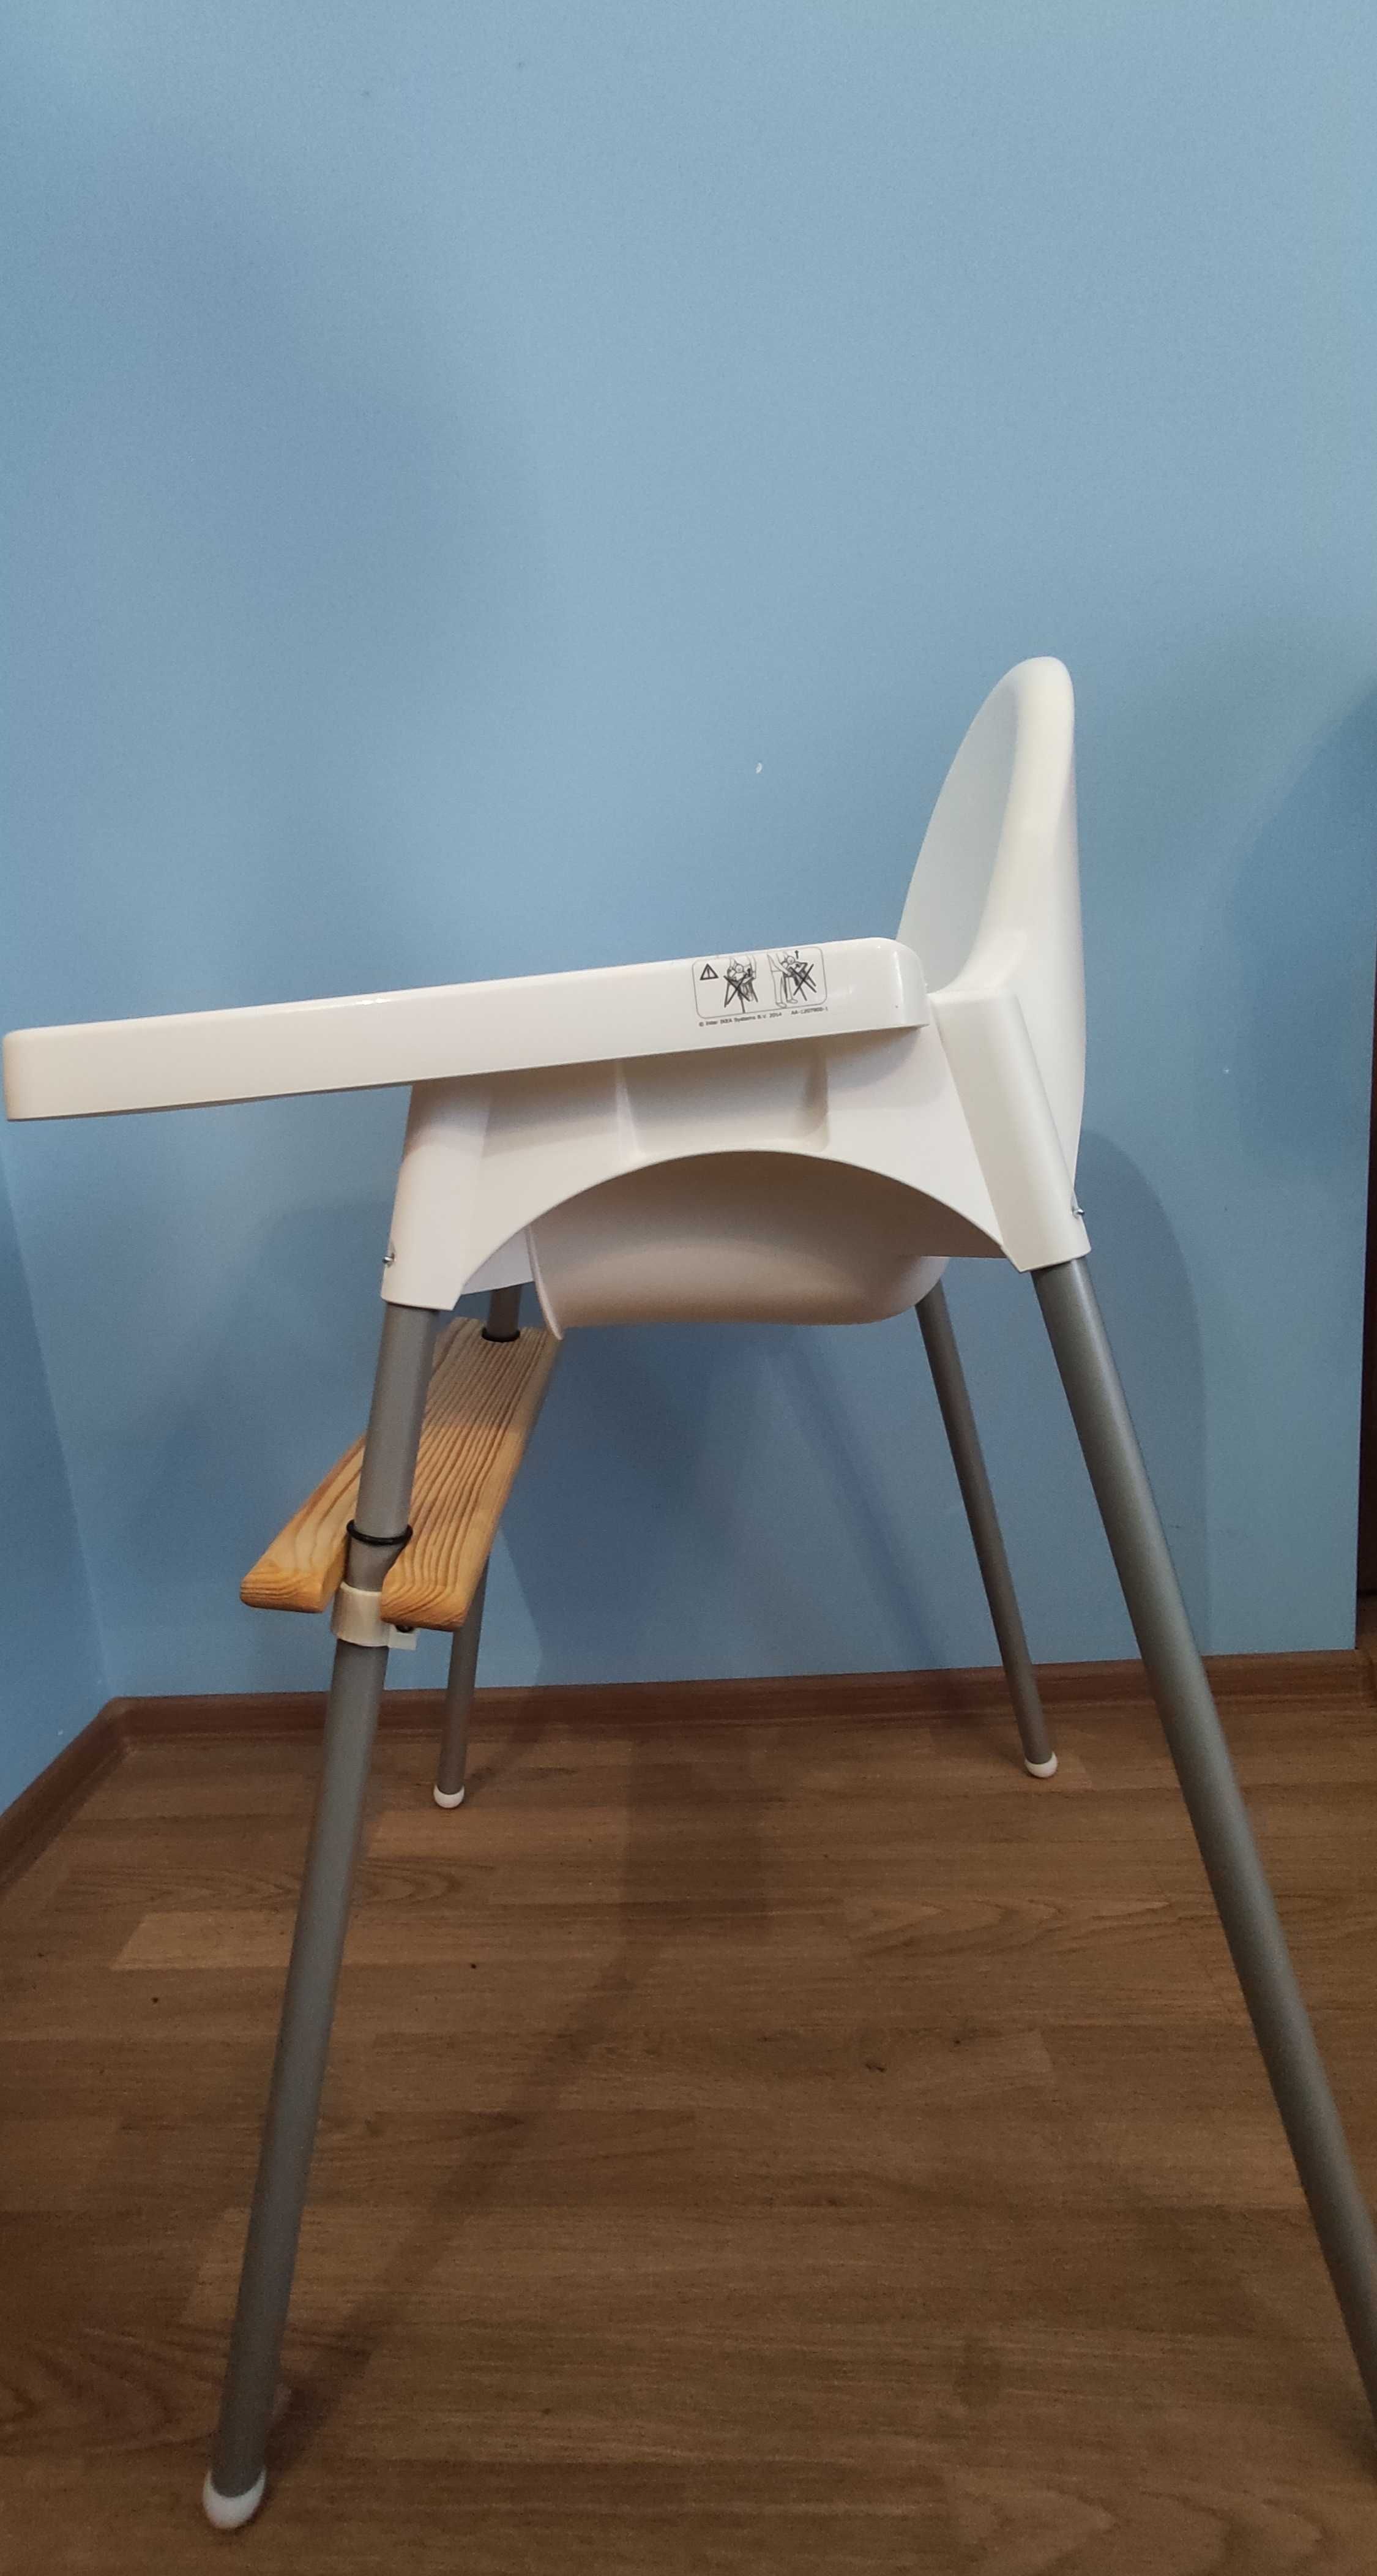 Подножка для стула Икеа антилоп, стульчика для кормления IKEA antilop